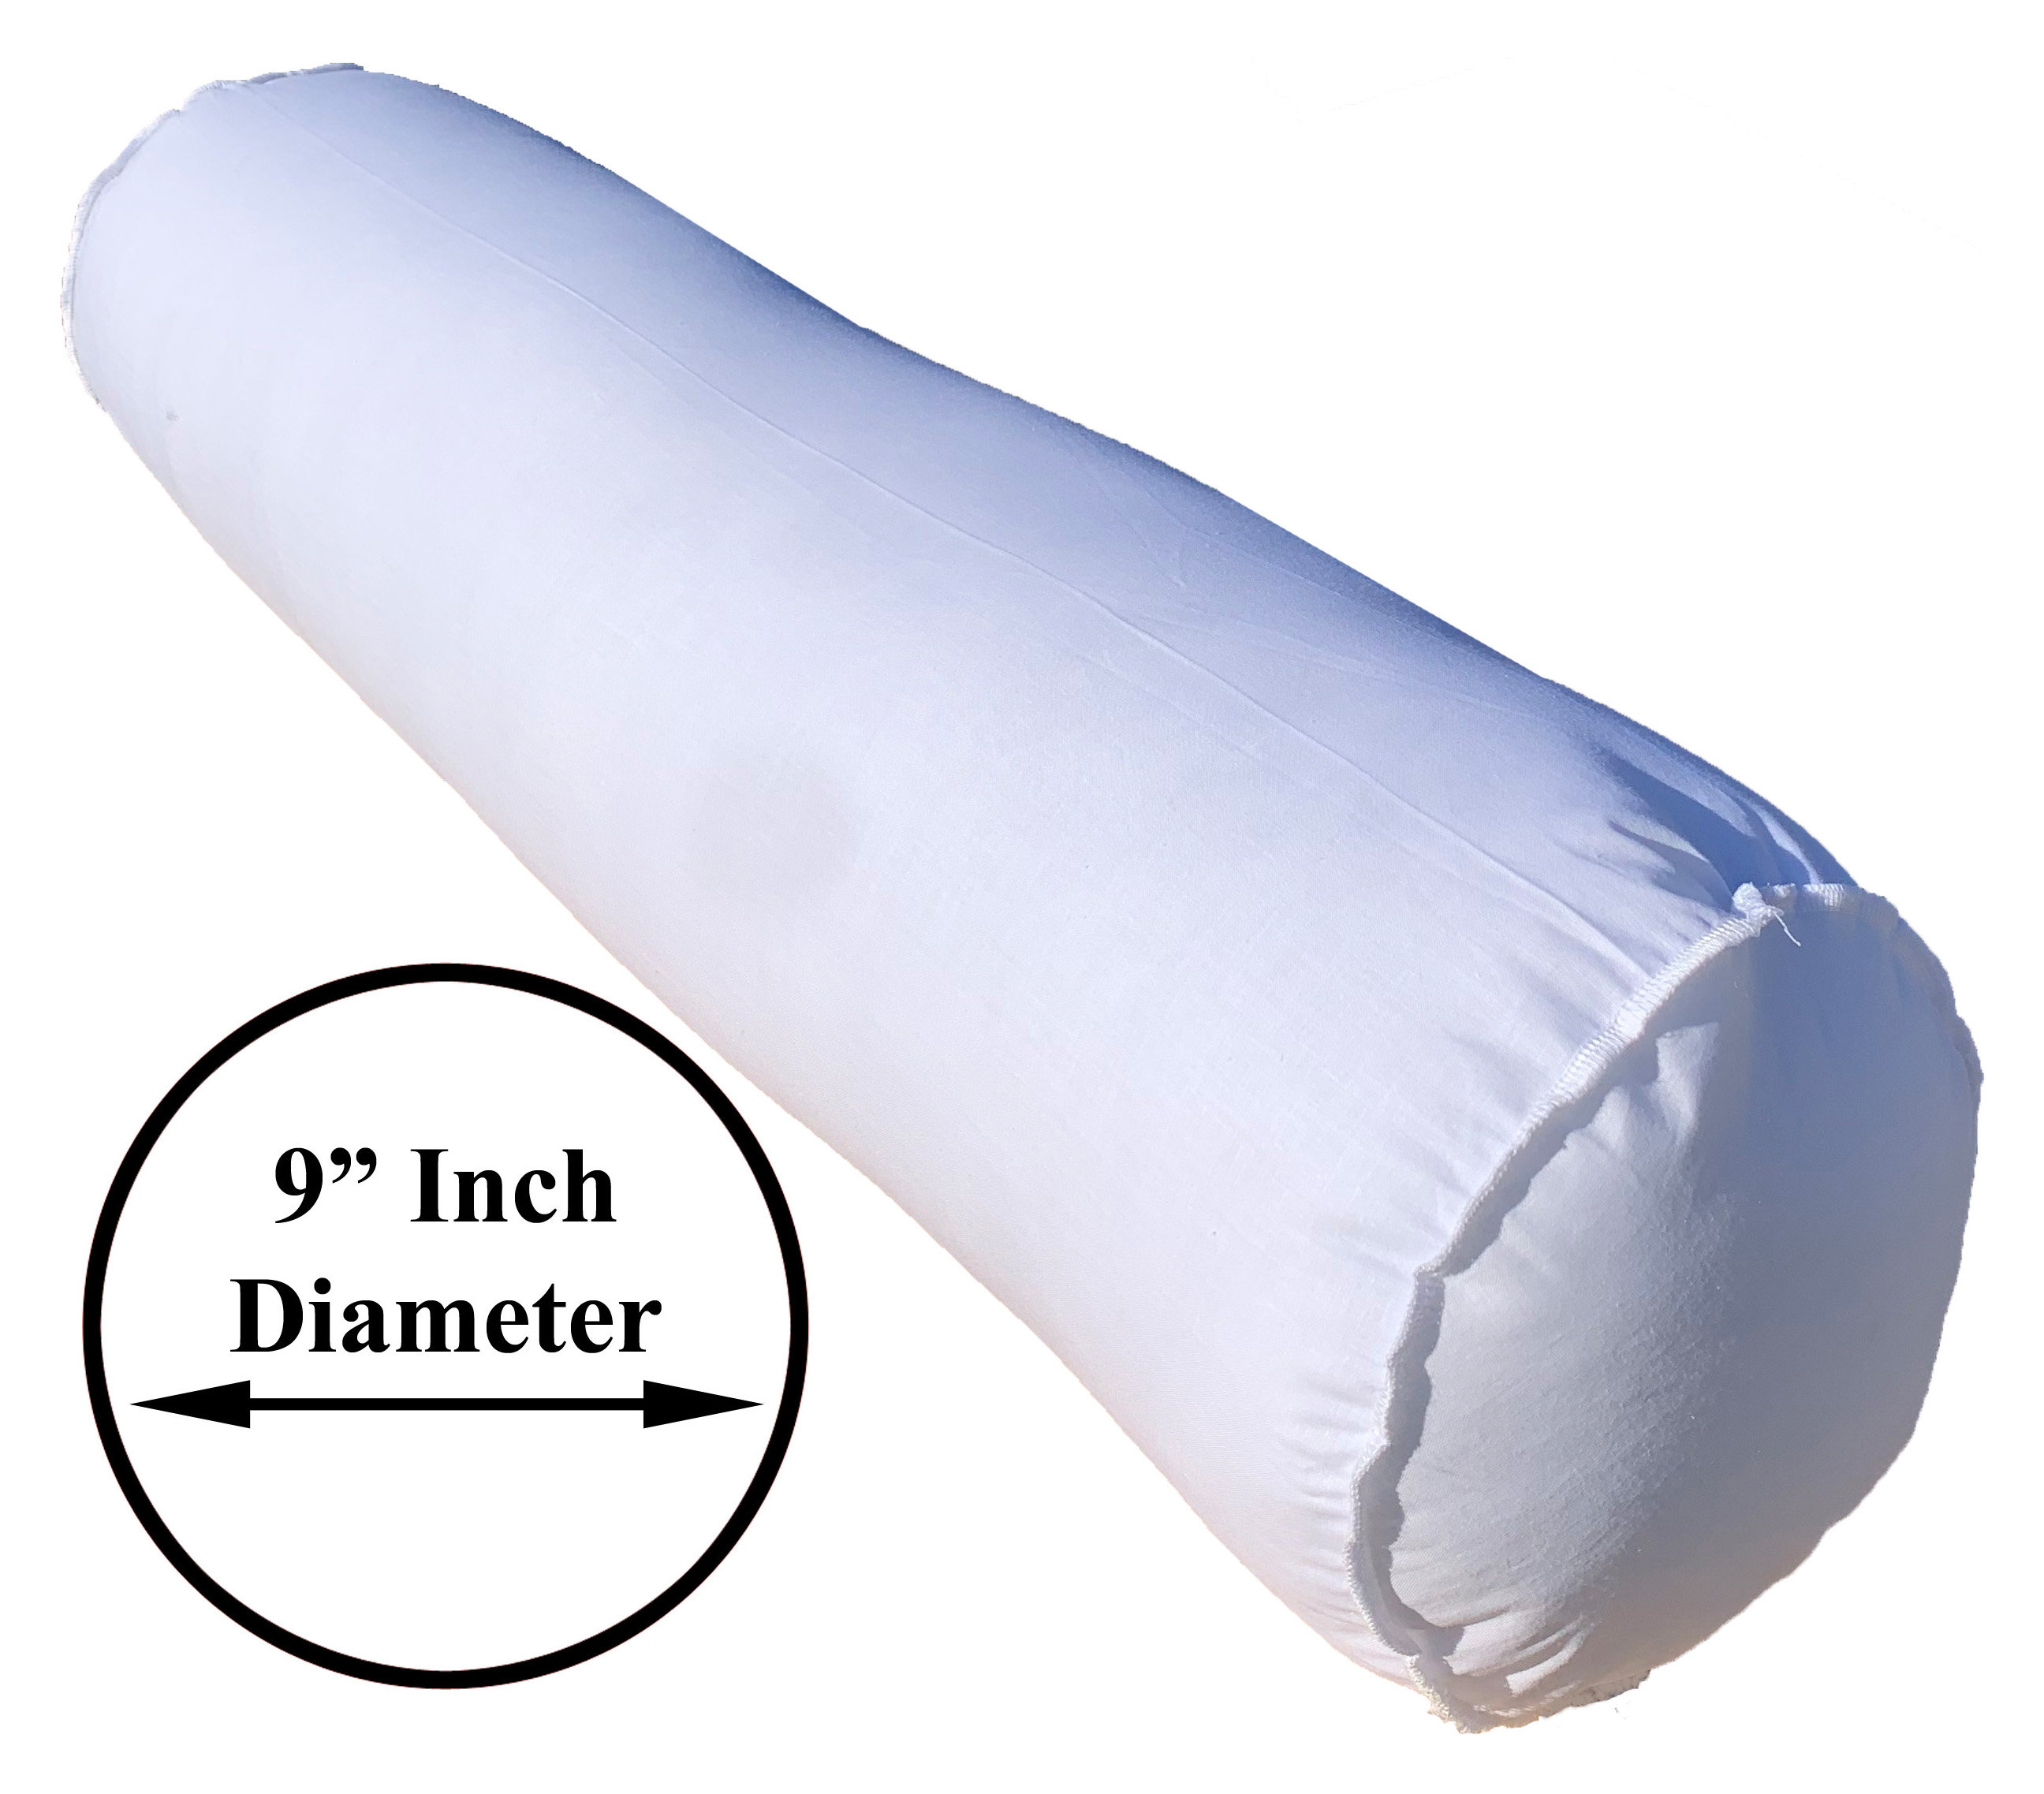 Pillowflex Synthetic Down Pillow Insert - 14x36 Down Alternative